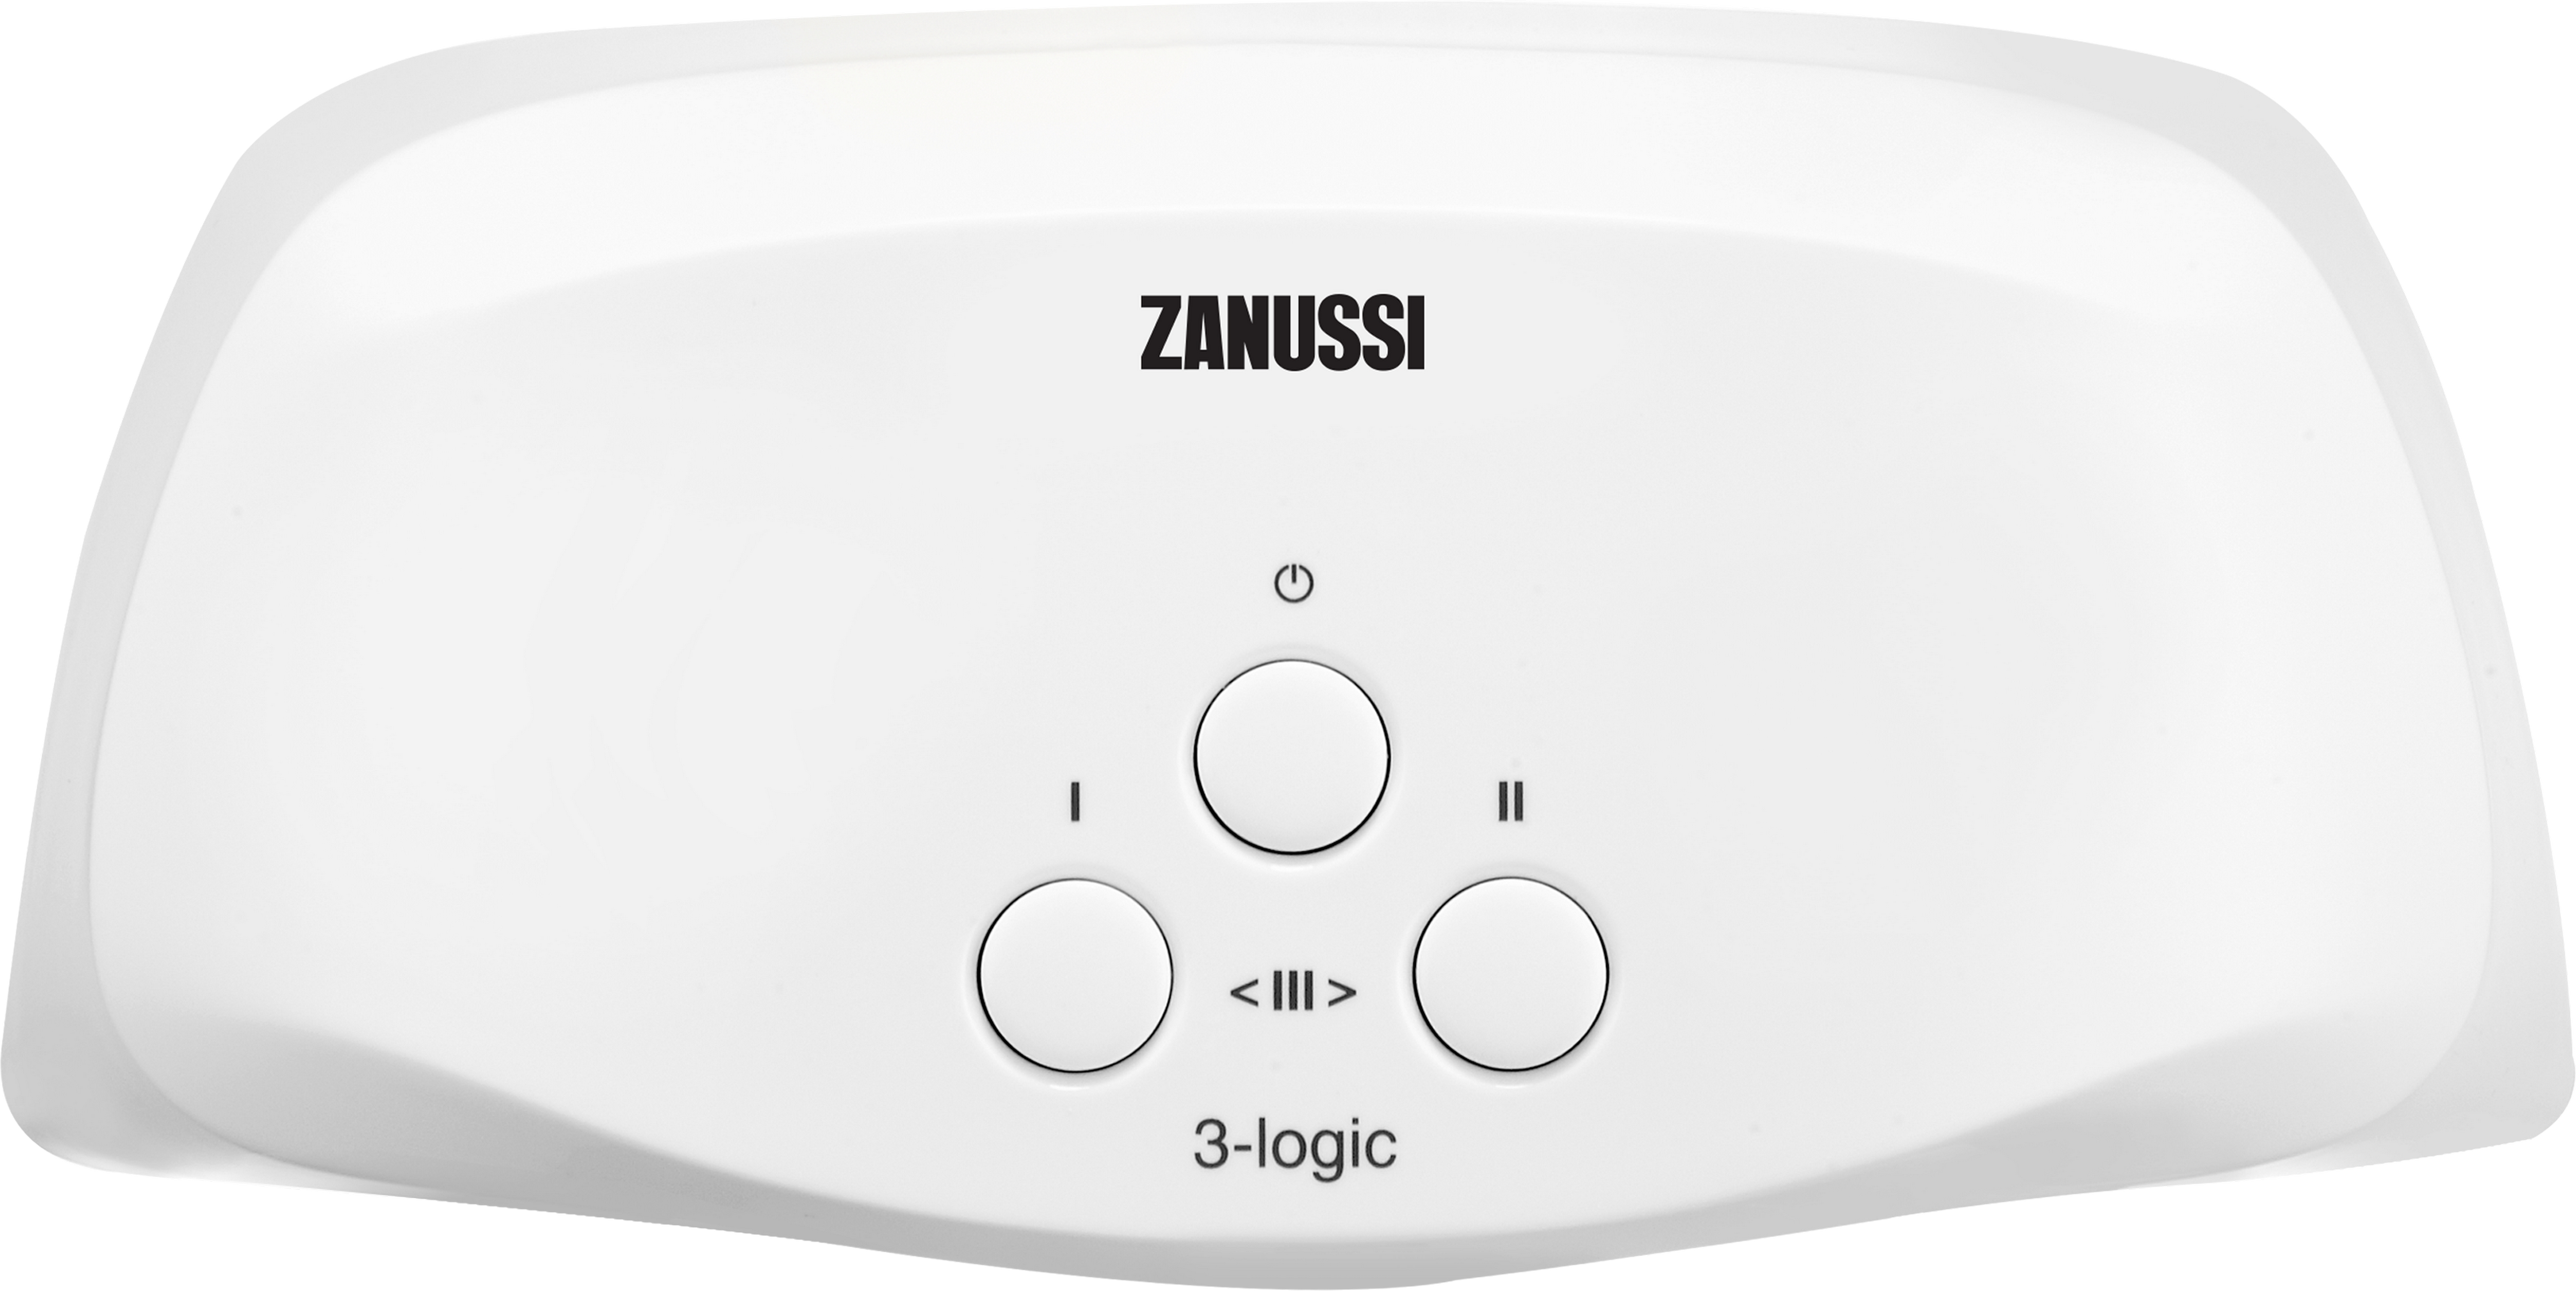 Кран Zanussi водонагреватель Zanussi 3-logic TS (5,5 кВт)